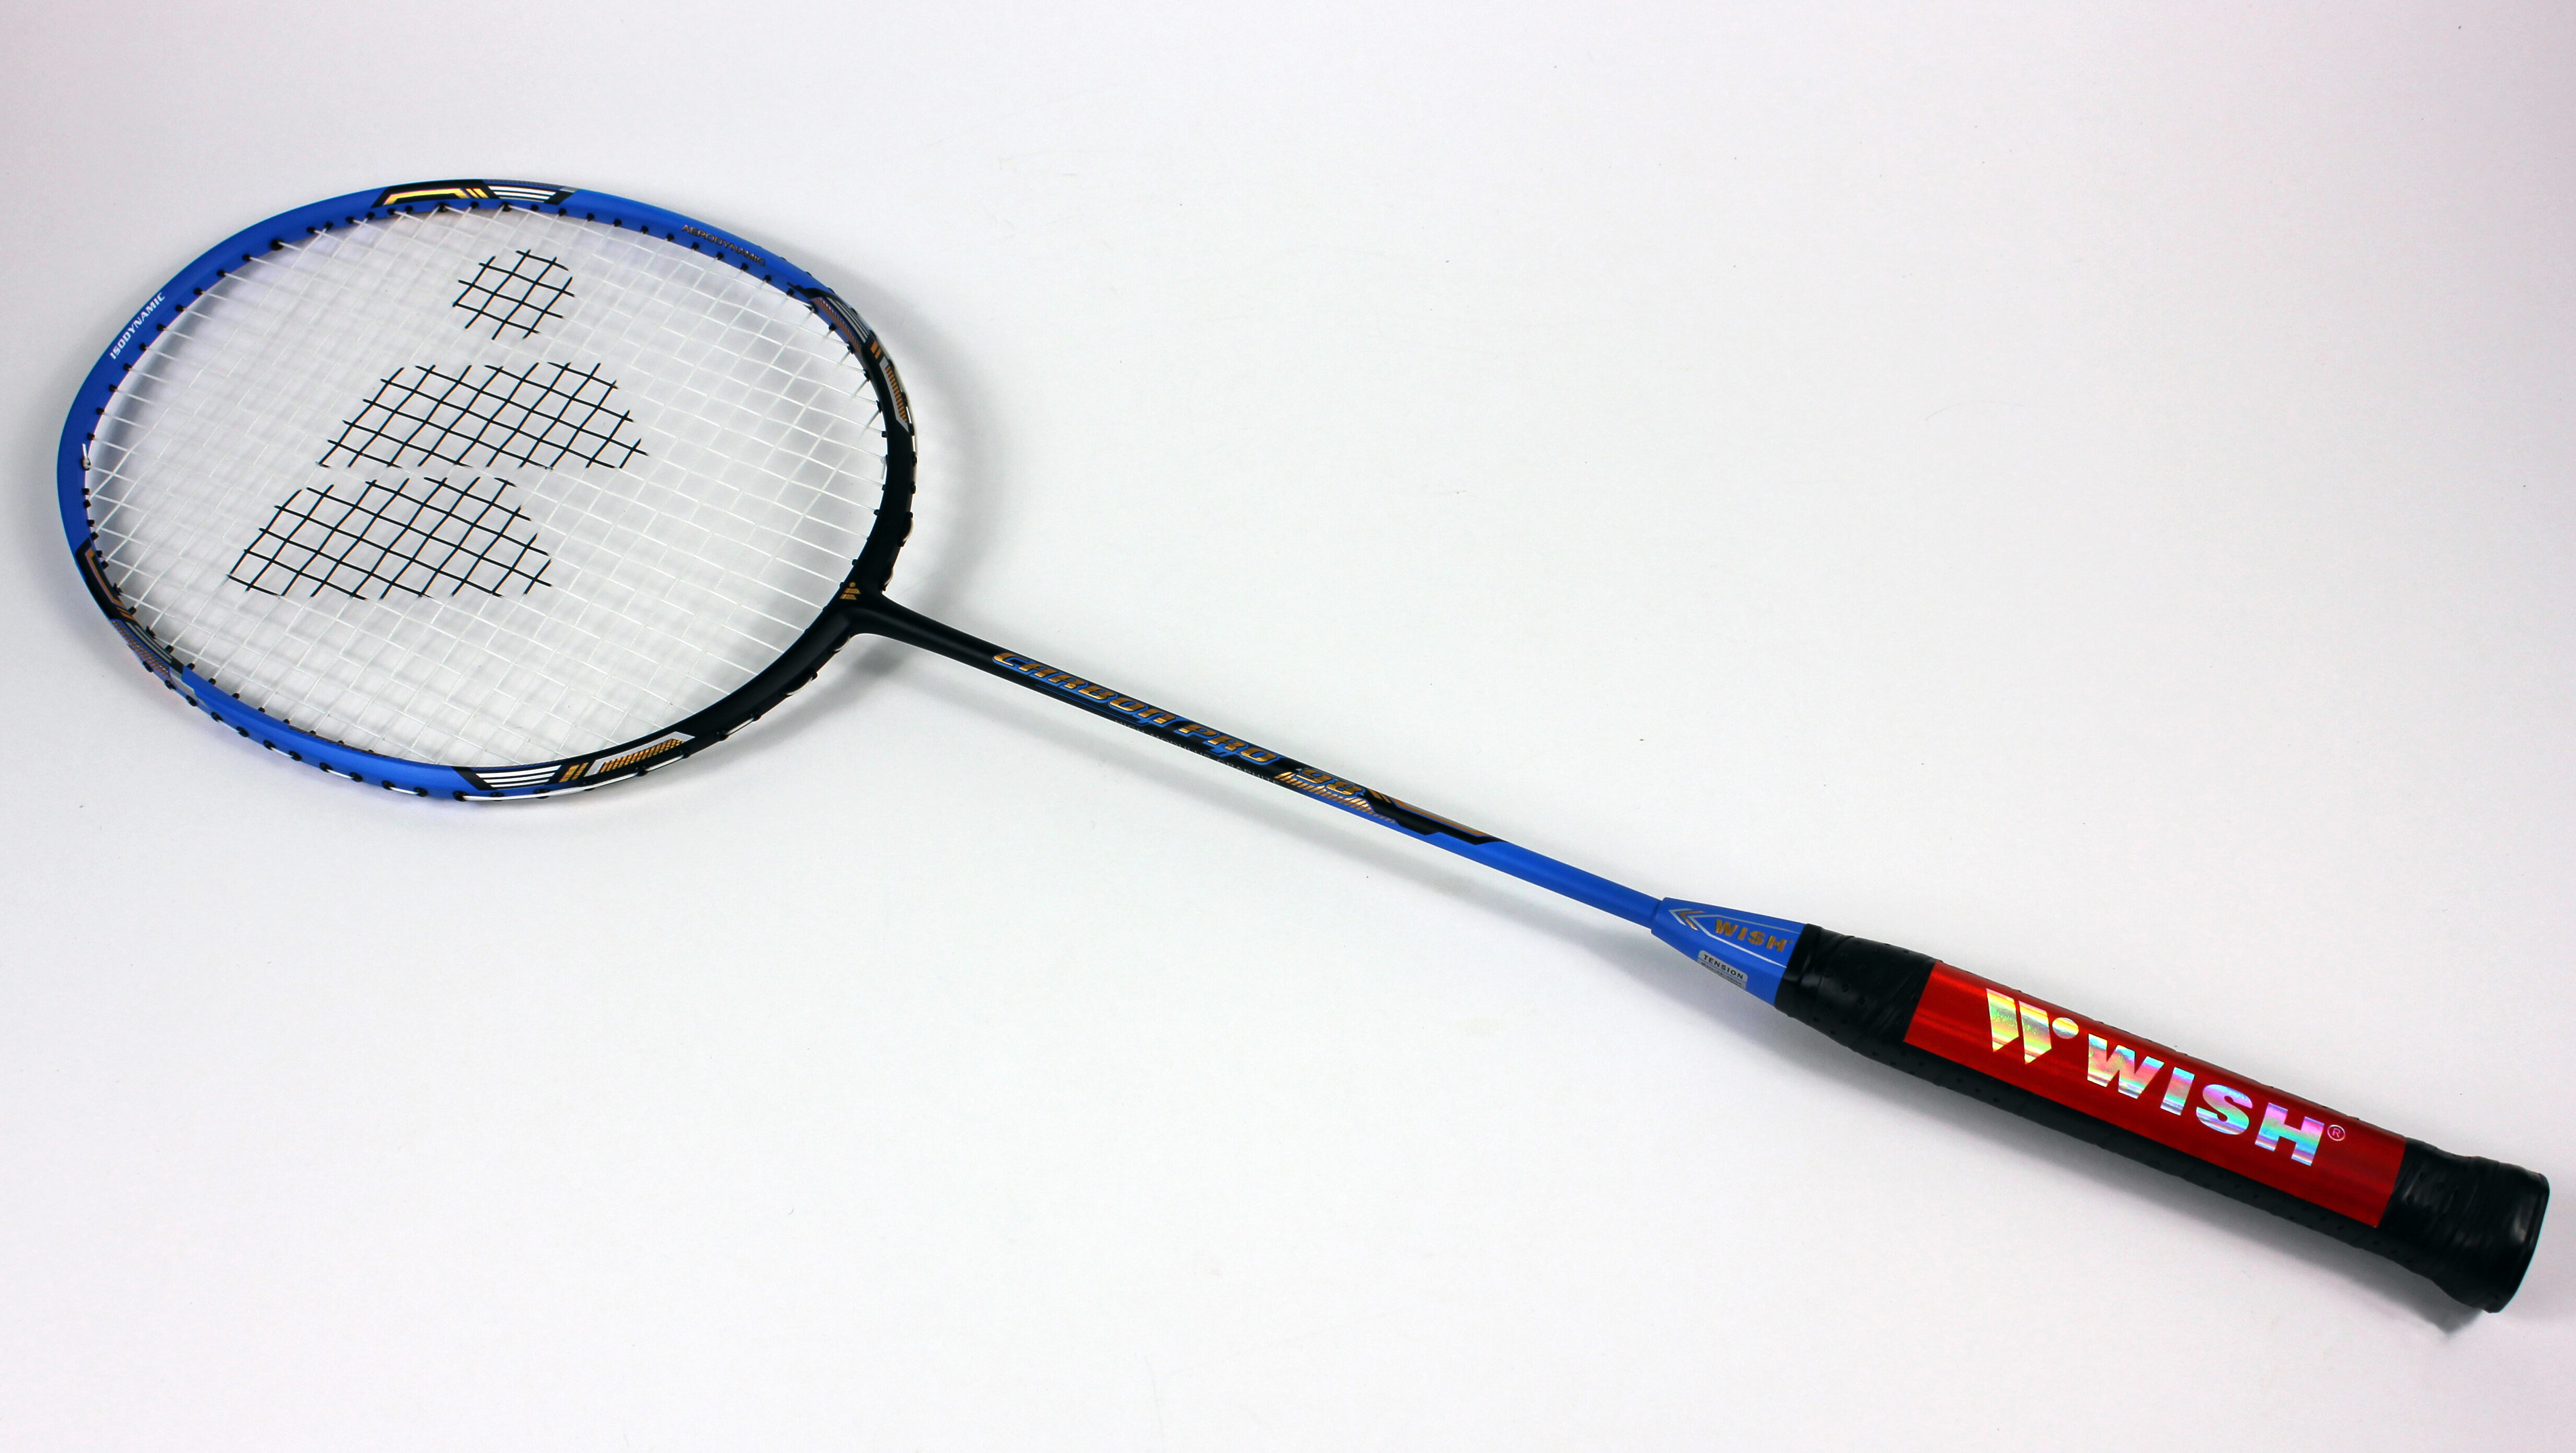 Prince Pro Warrior Nano 75 Graphite badminton raquette 6 navettes RRP £ 110